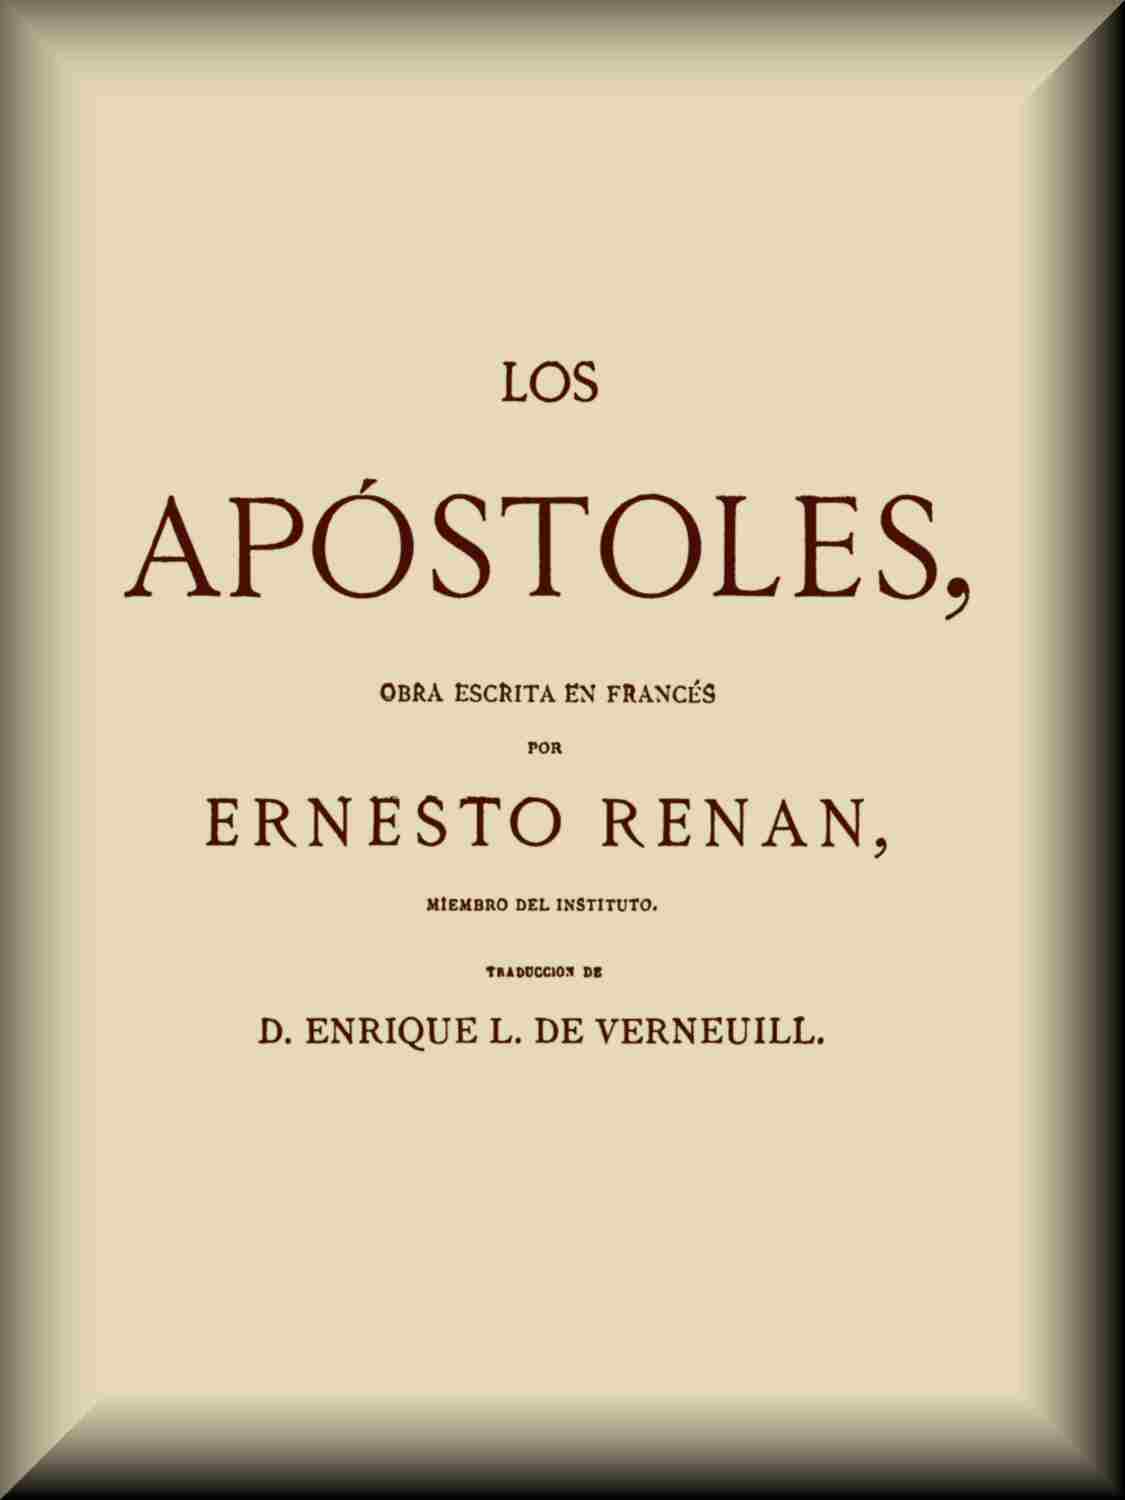 Los apóstoles, by Ernesto Renán—A Project Gutenberg eBook